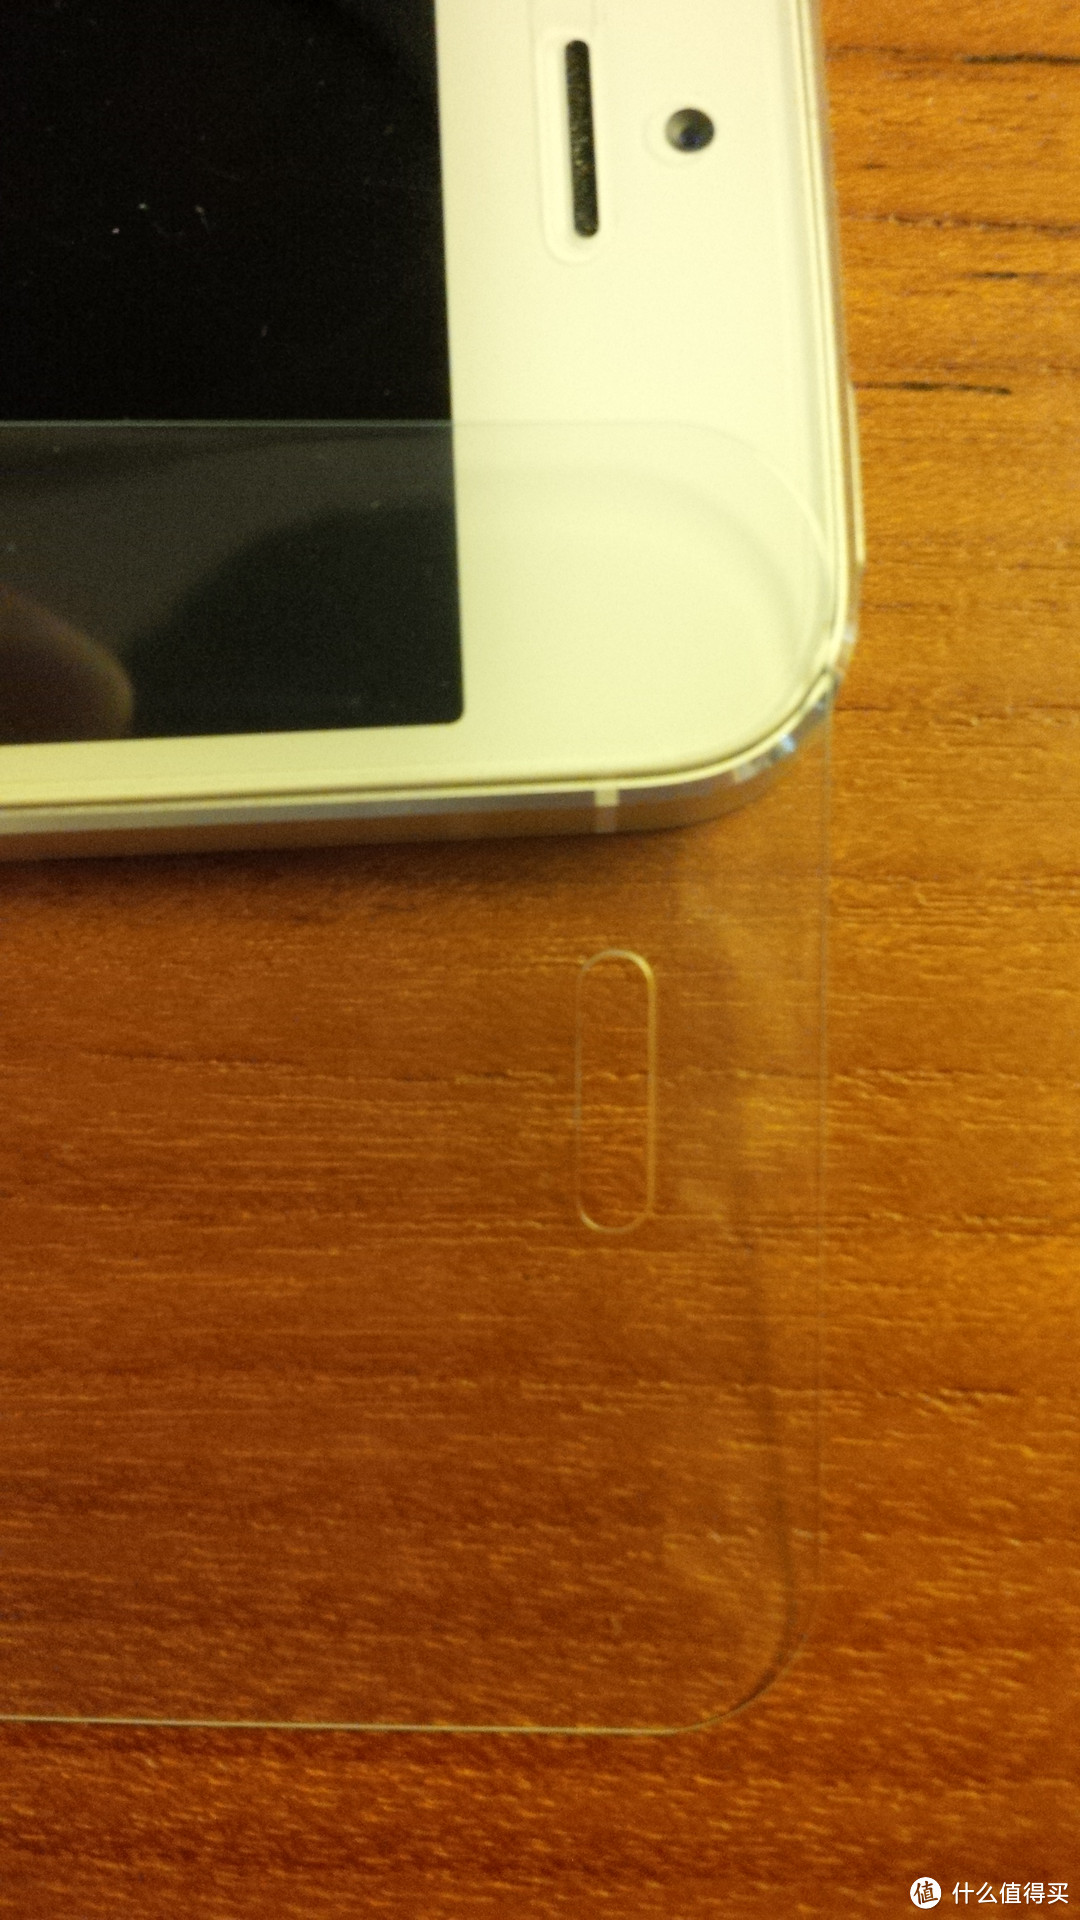 LOCA 路可 iPhone 5/5C/5S 钢化玻璃膜 评测